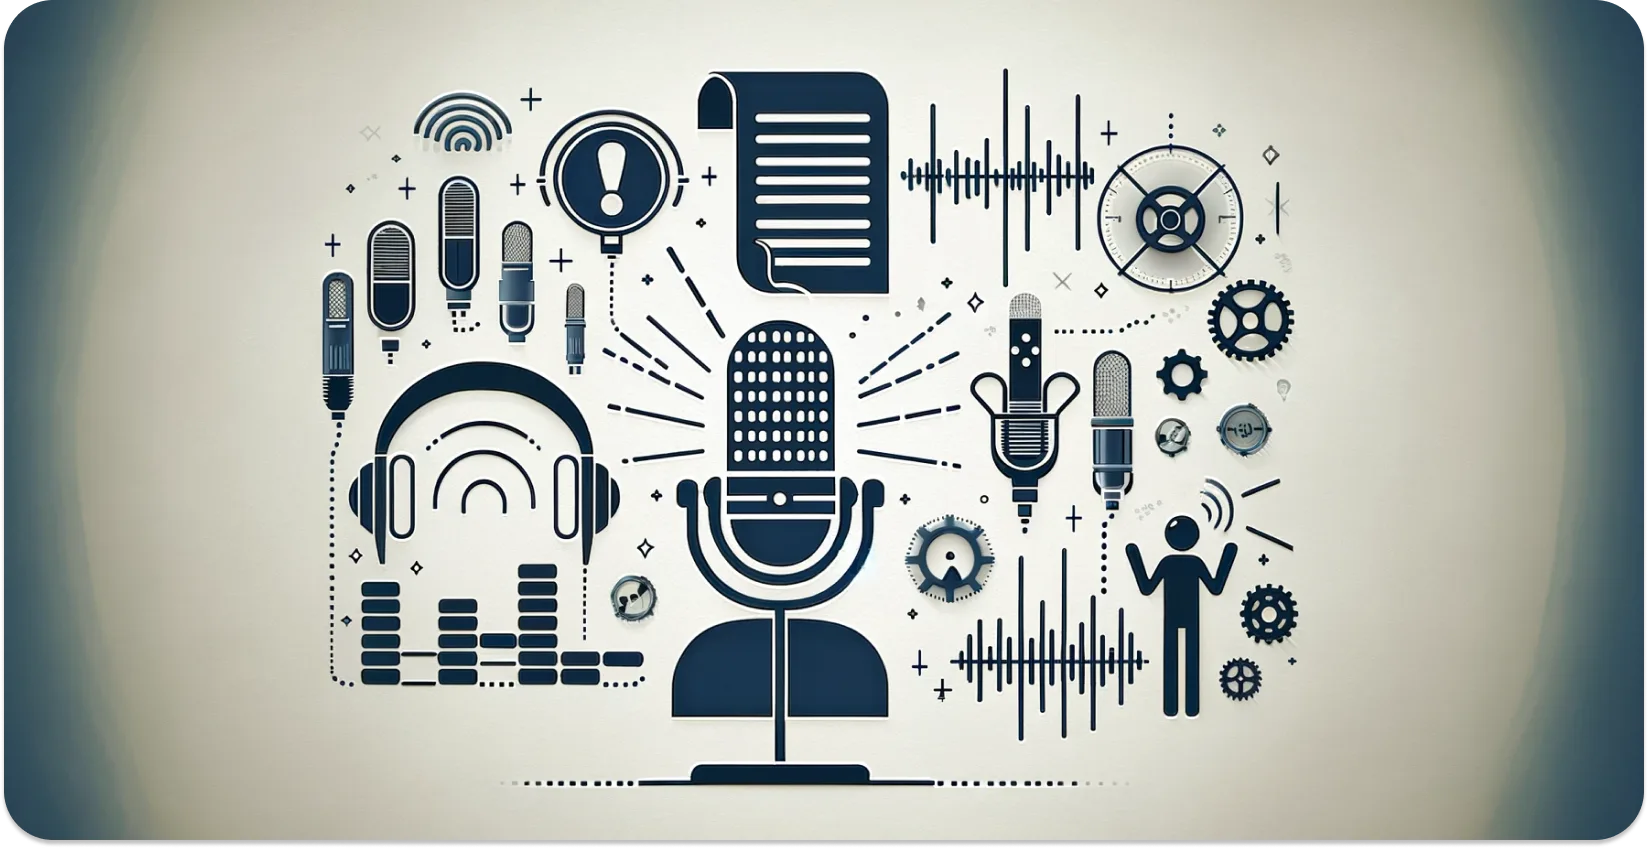 ऑडियो ट्रांसक्रिप्शन का प्रतीक माइक्रोफोन, हेडफ़ोन और ध्वनि तरंगों का कलात्मक चित्रण।